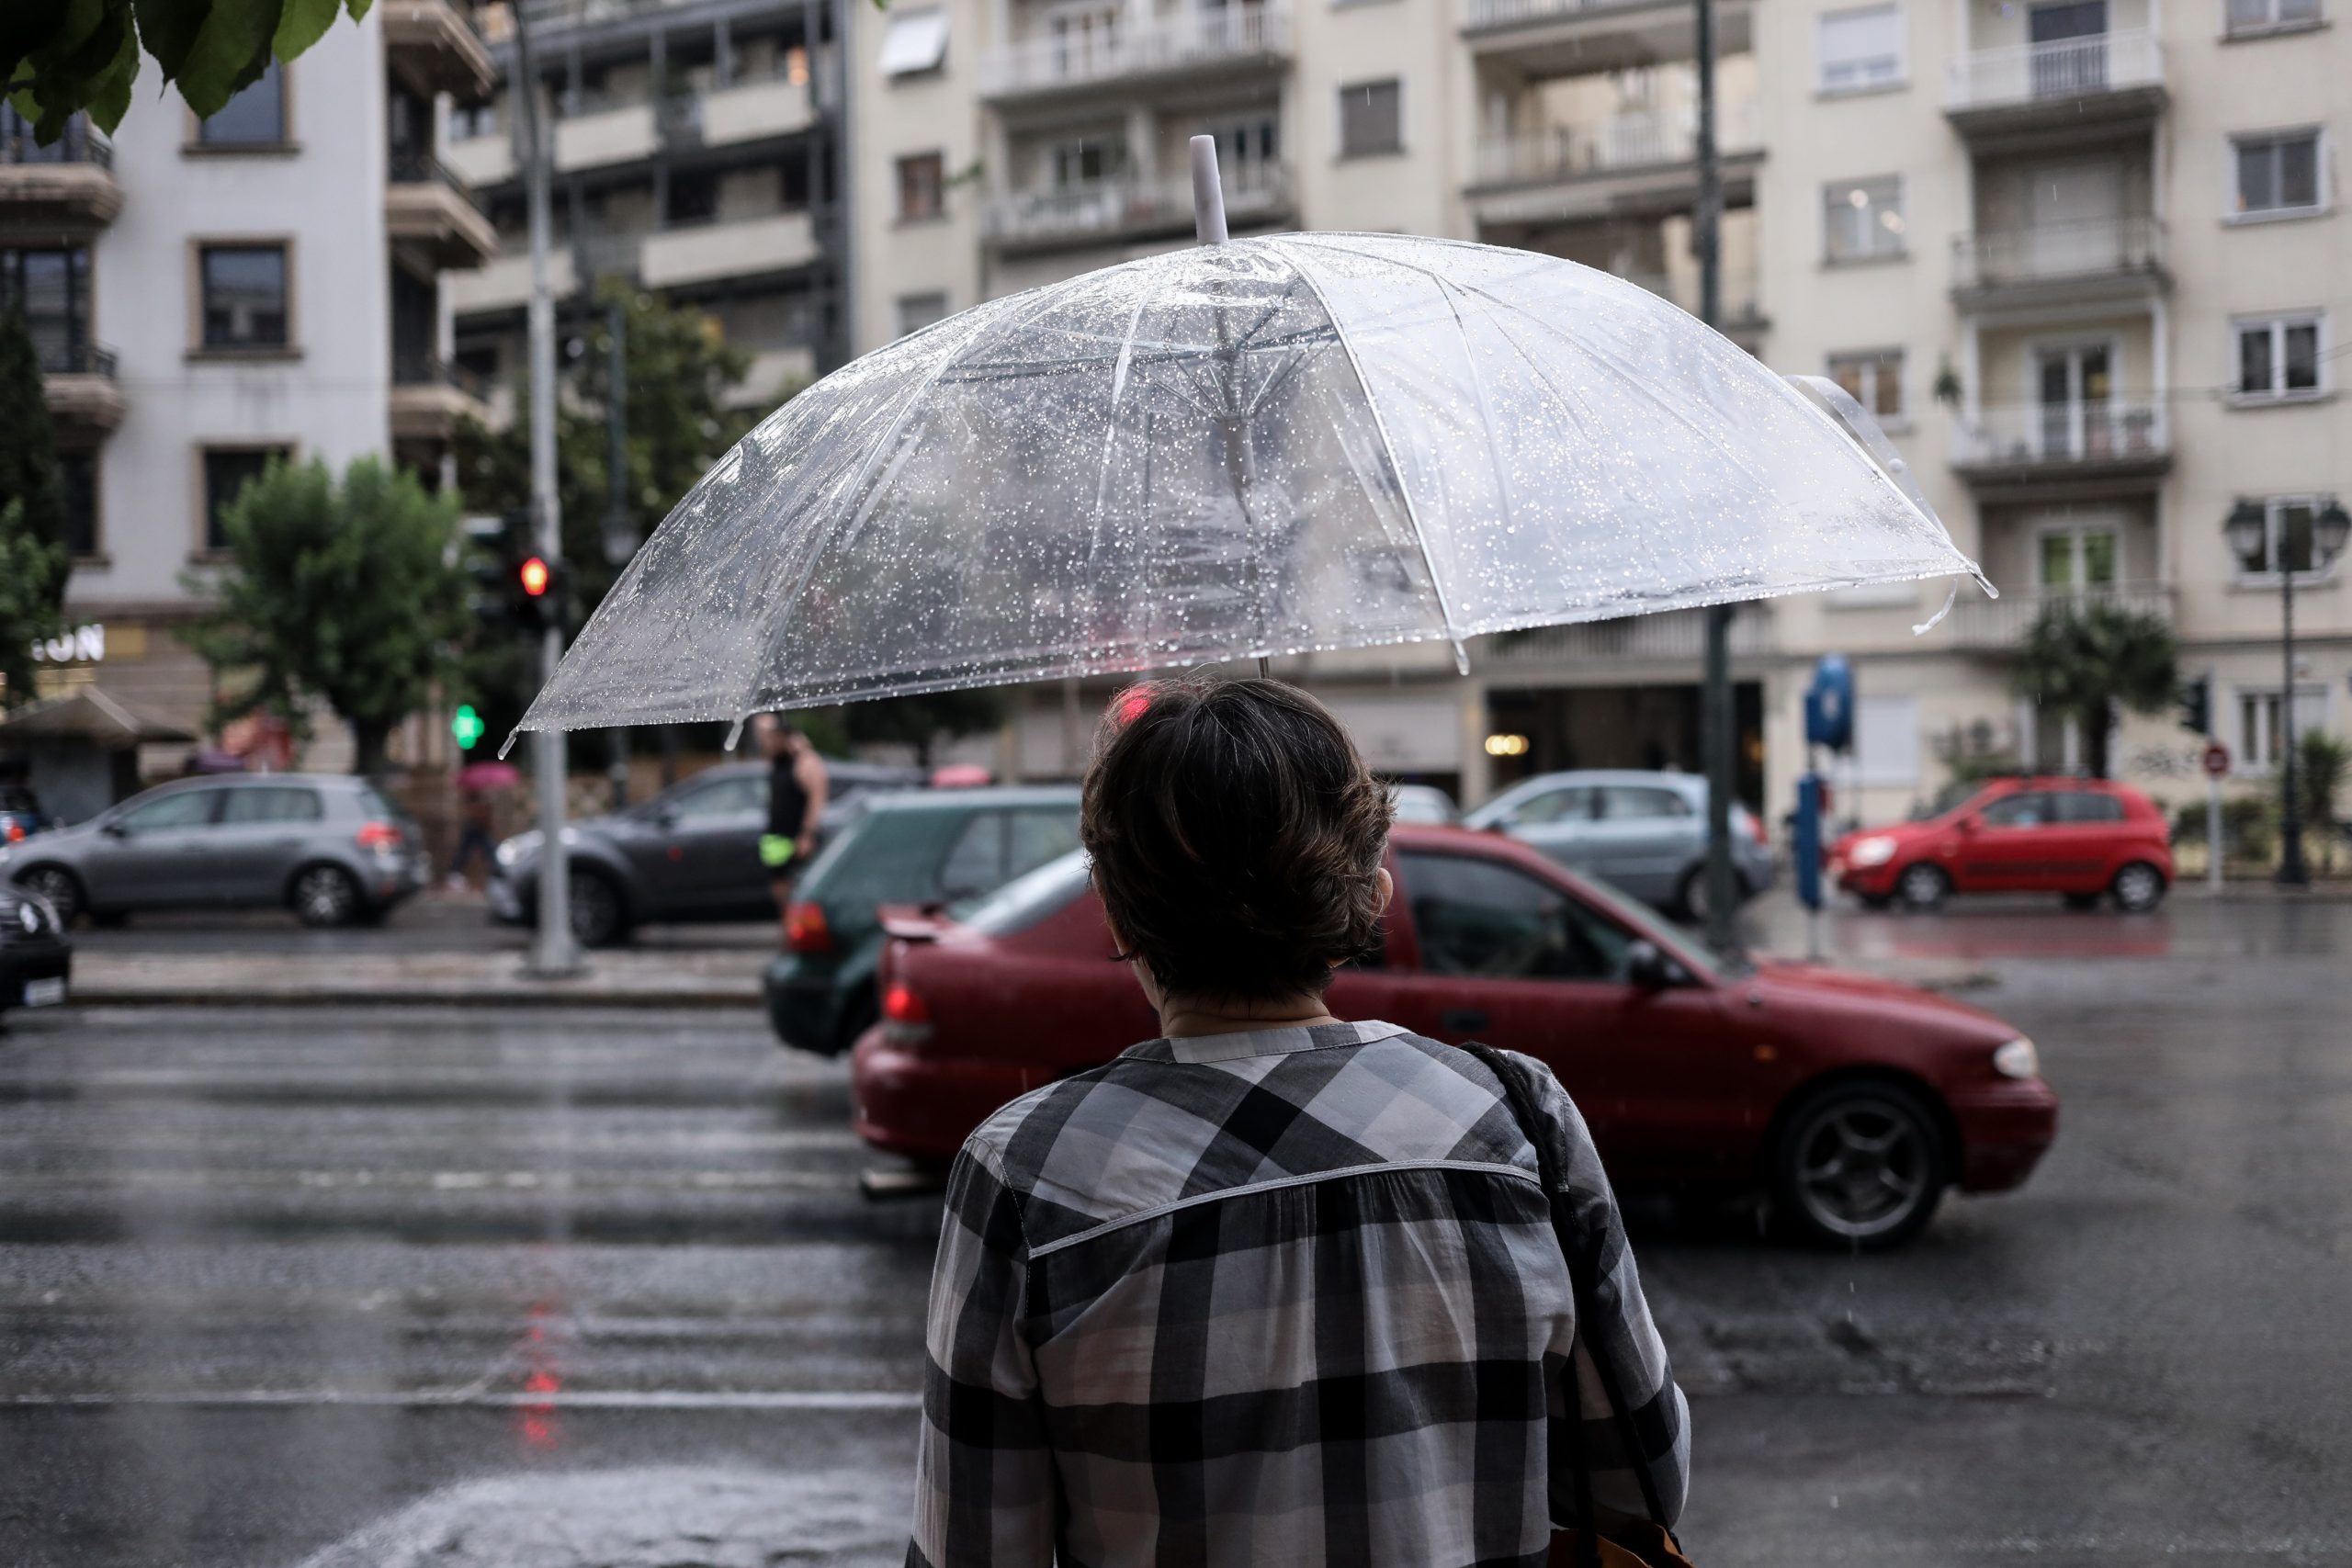 Έκτακτο δελτίο επιδείνωσης καιρού από την ΕΜΥ – Έρχονται βροχές και καταιγίδες σε αρκετές περιοχές